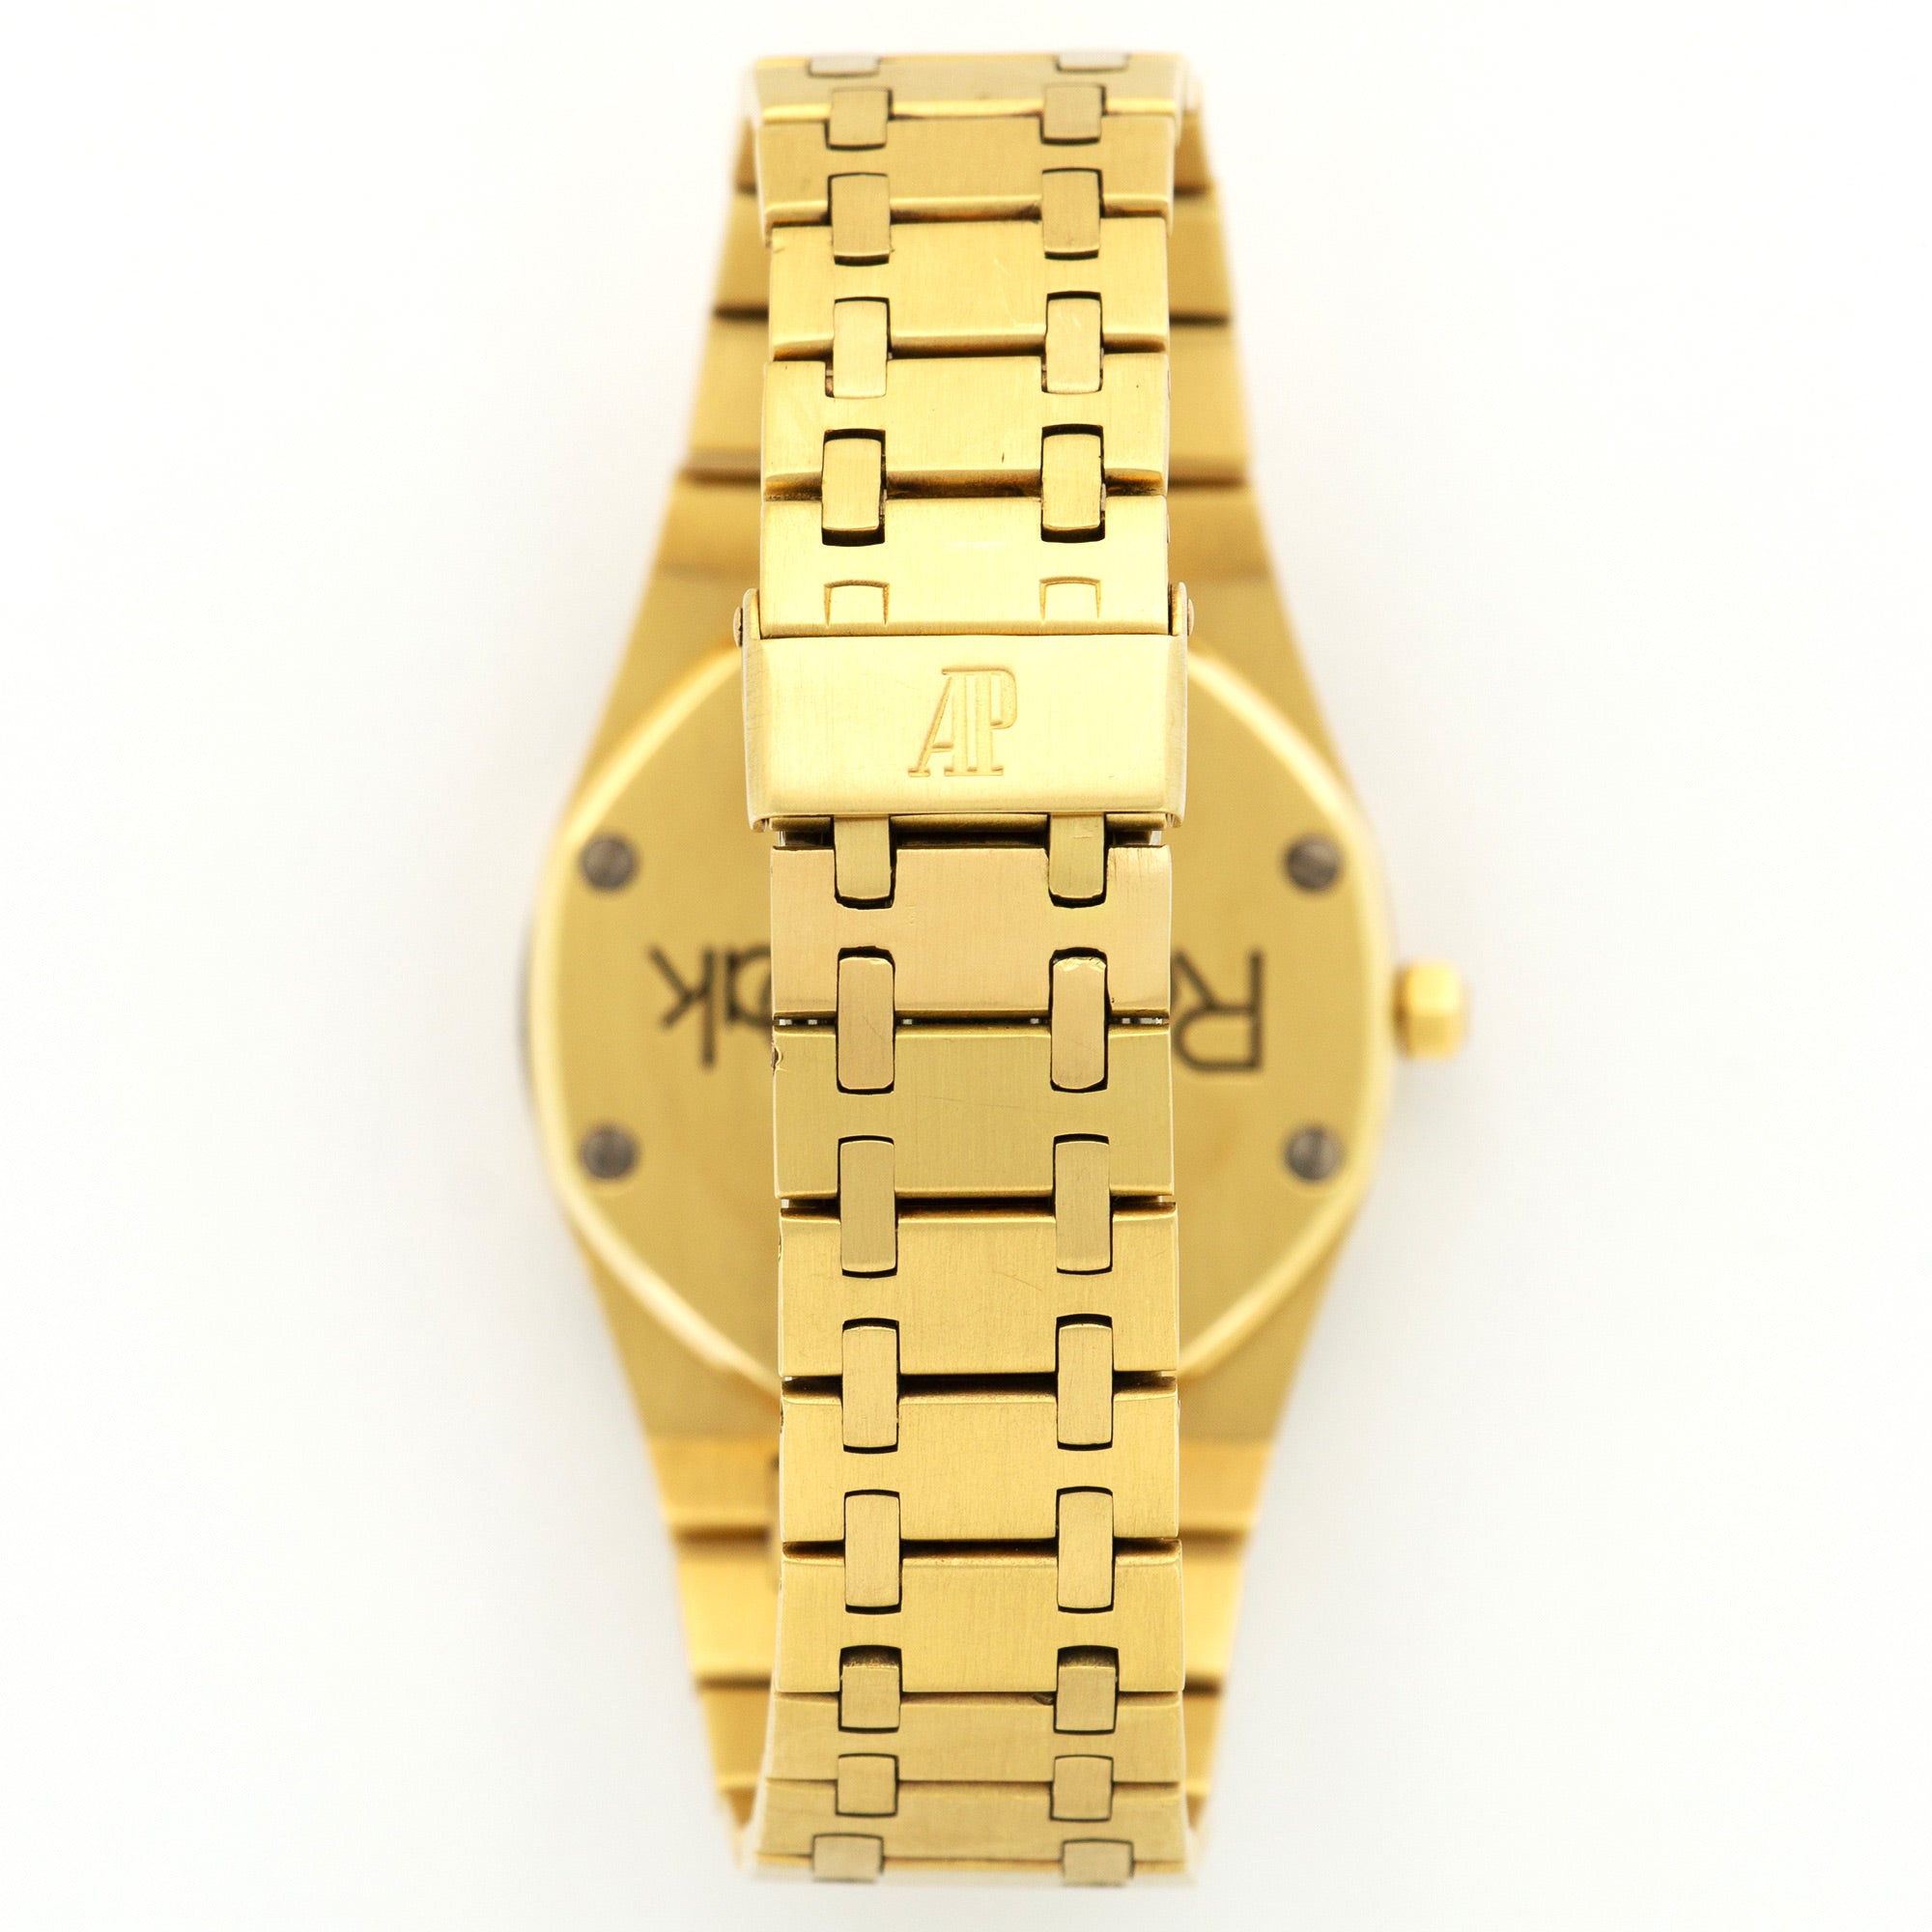 Audemars Piguet - Audemars Piguet Yellow Gold Royal Oak Watch Ref. 4100 - The Keystone Watches